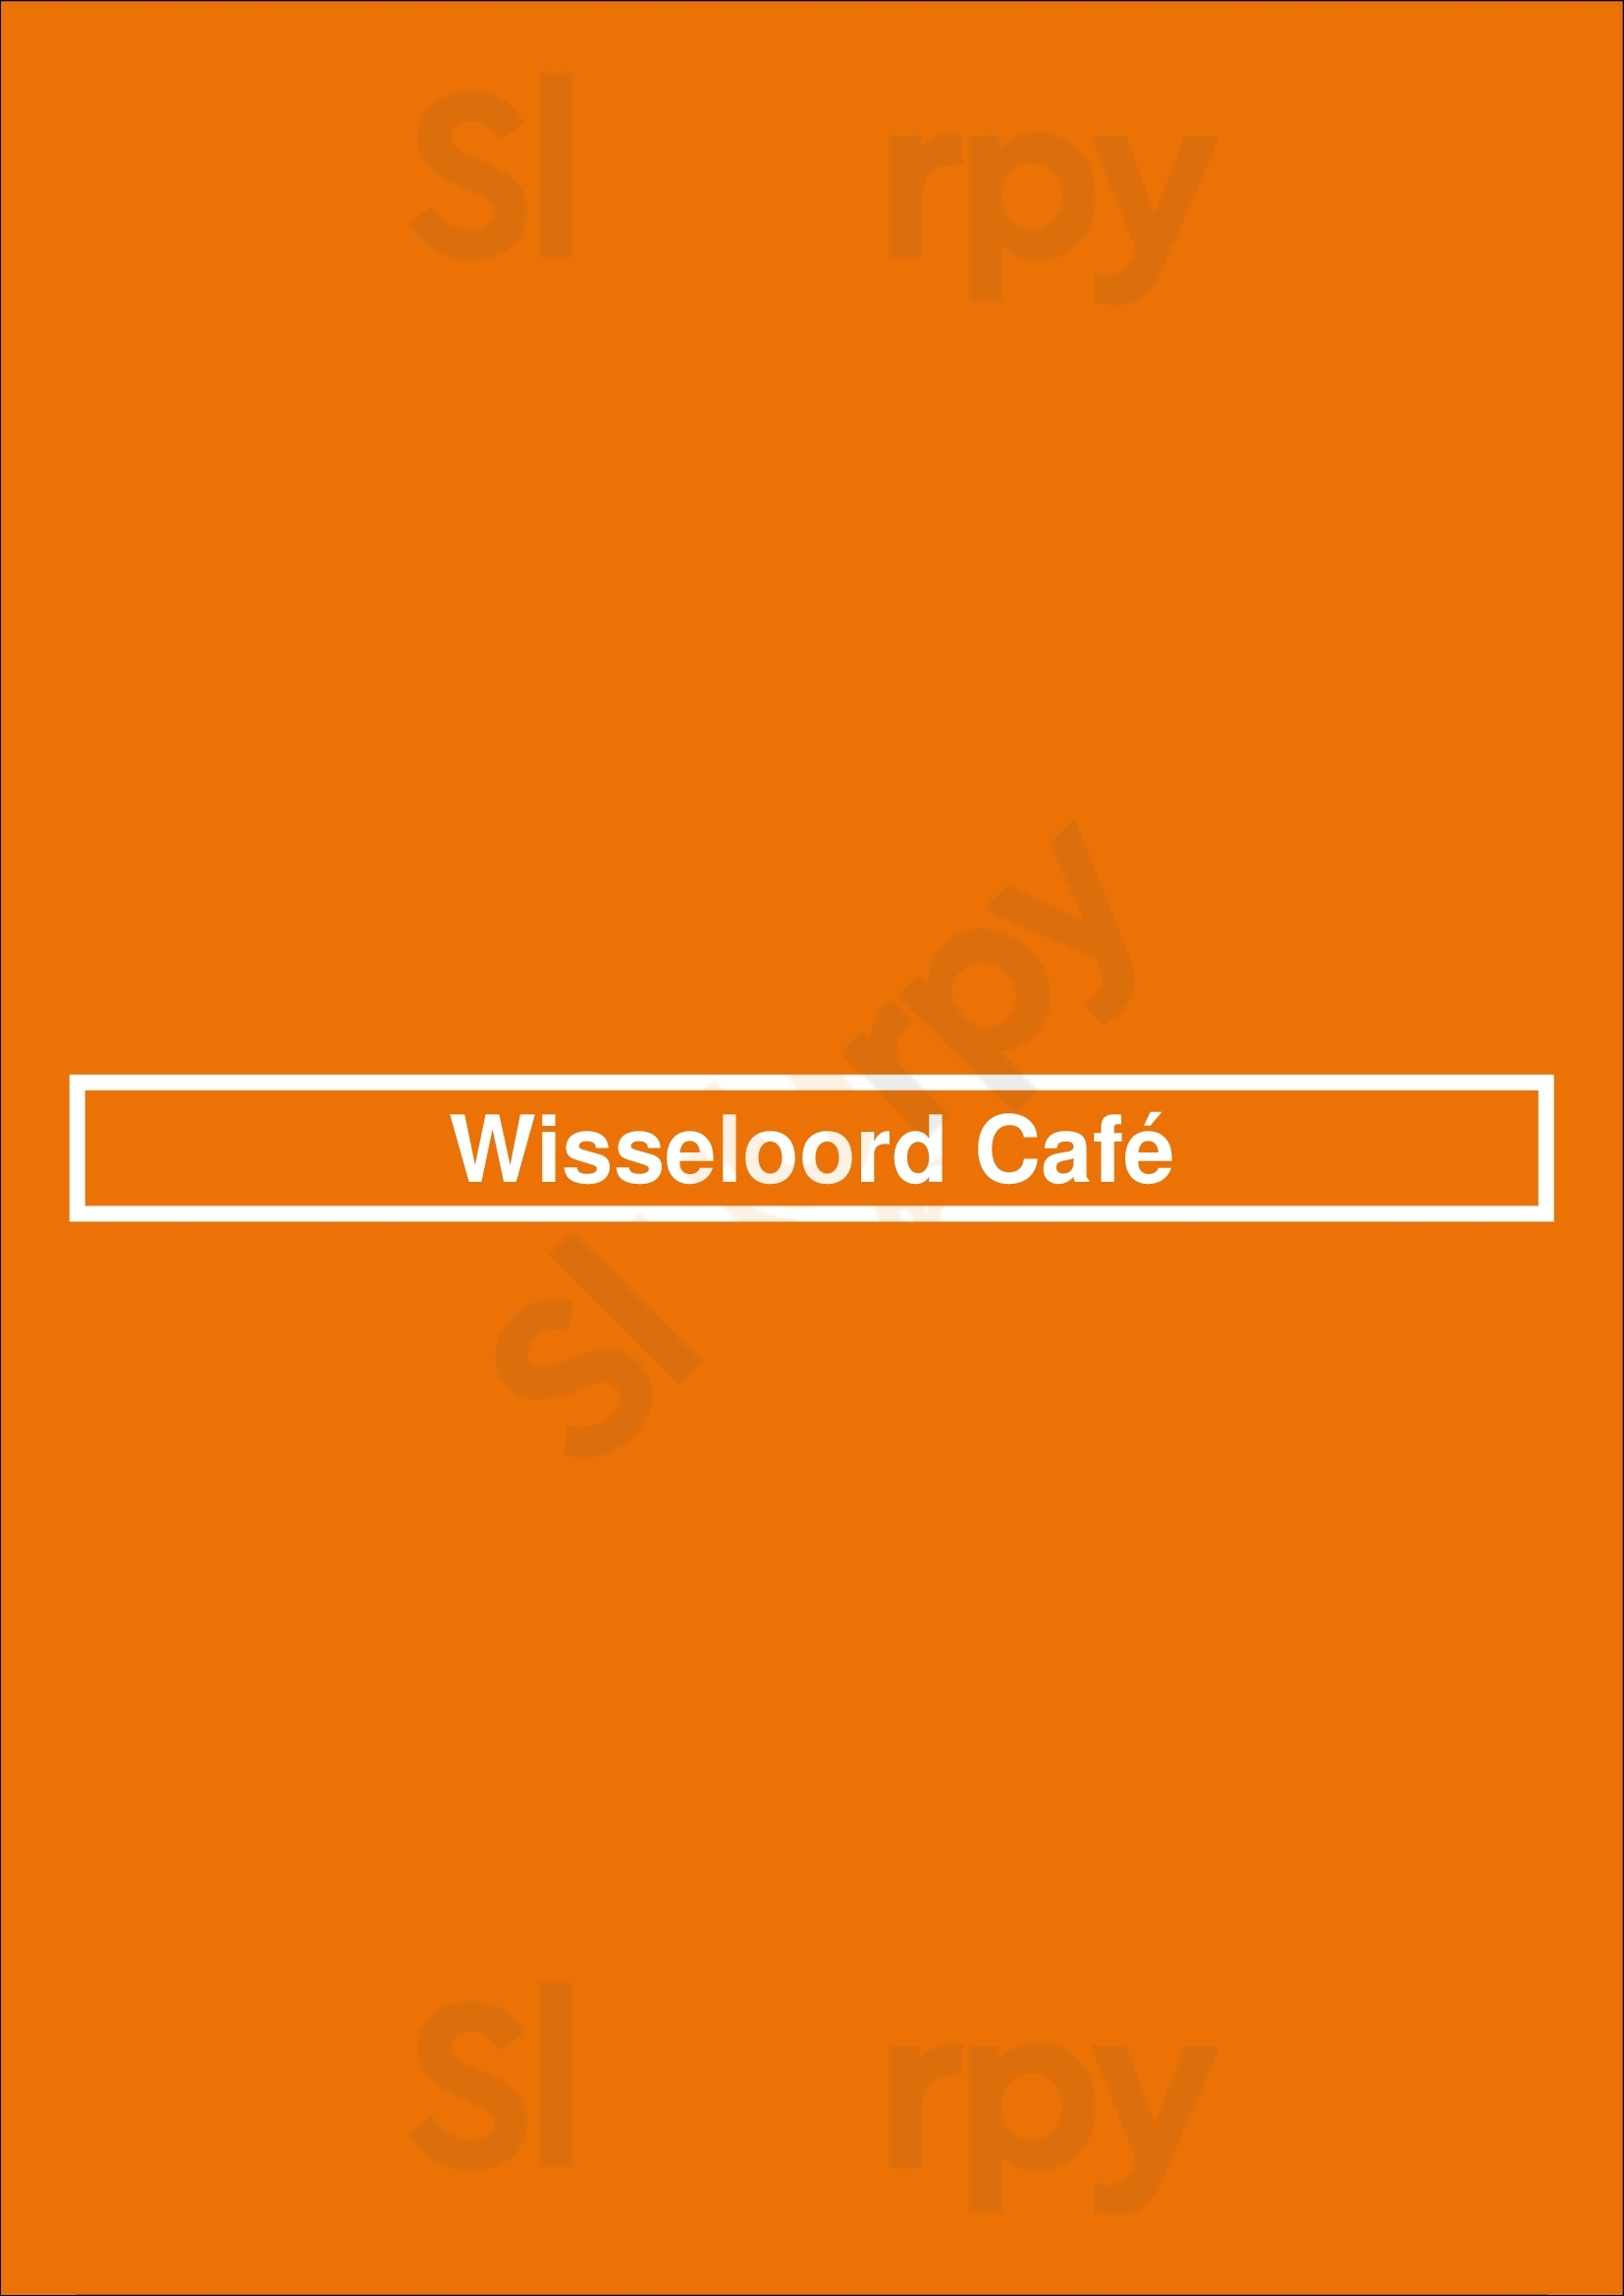 Wisseloord Café Hilversum Menu - 1